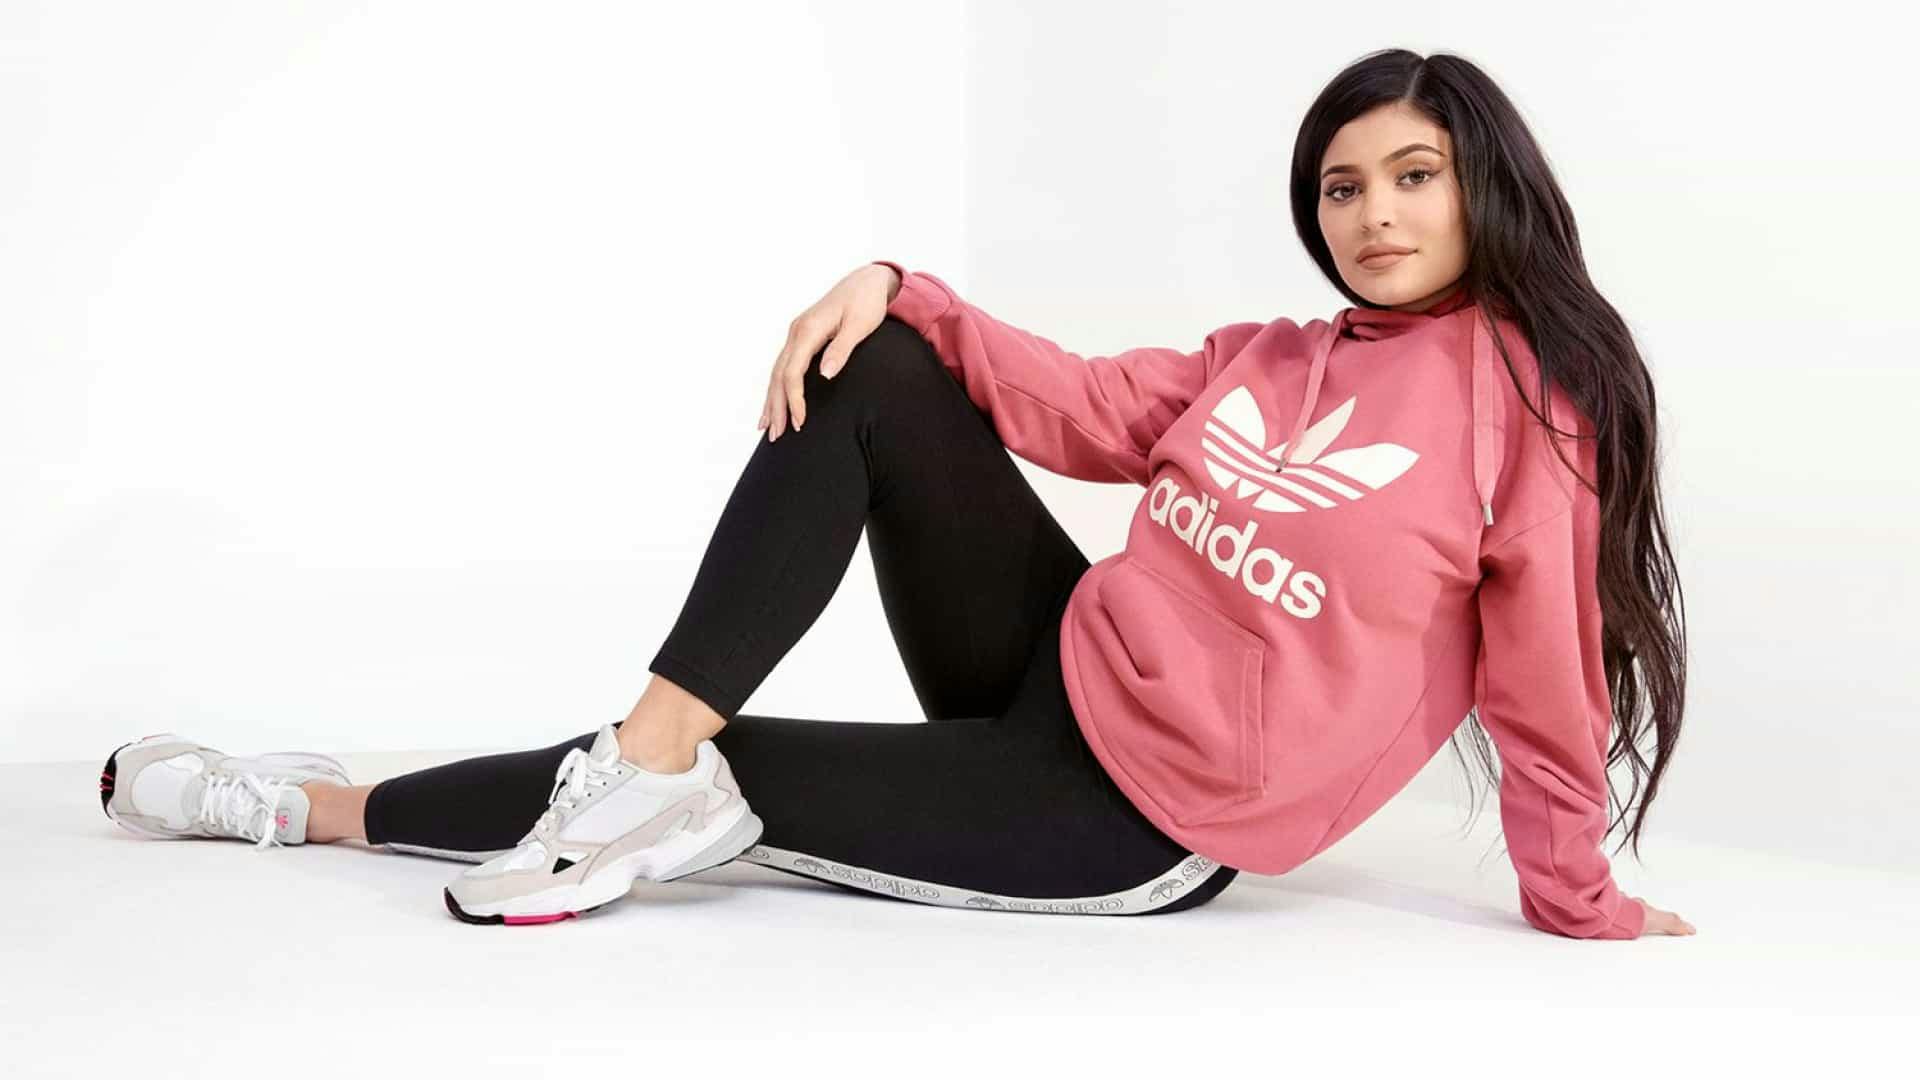 Спортивный костюм женский ростов. Adidas Falcon Kylie Jenner.